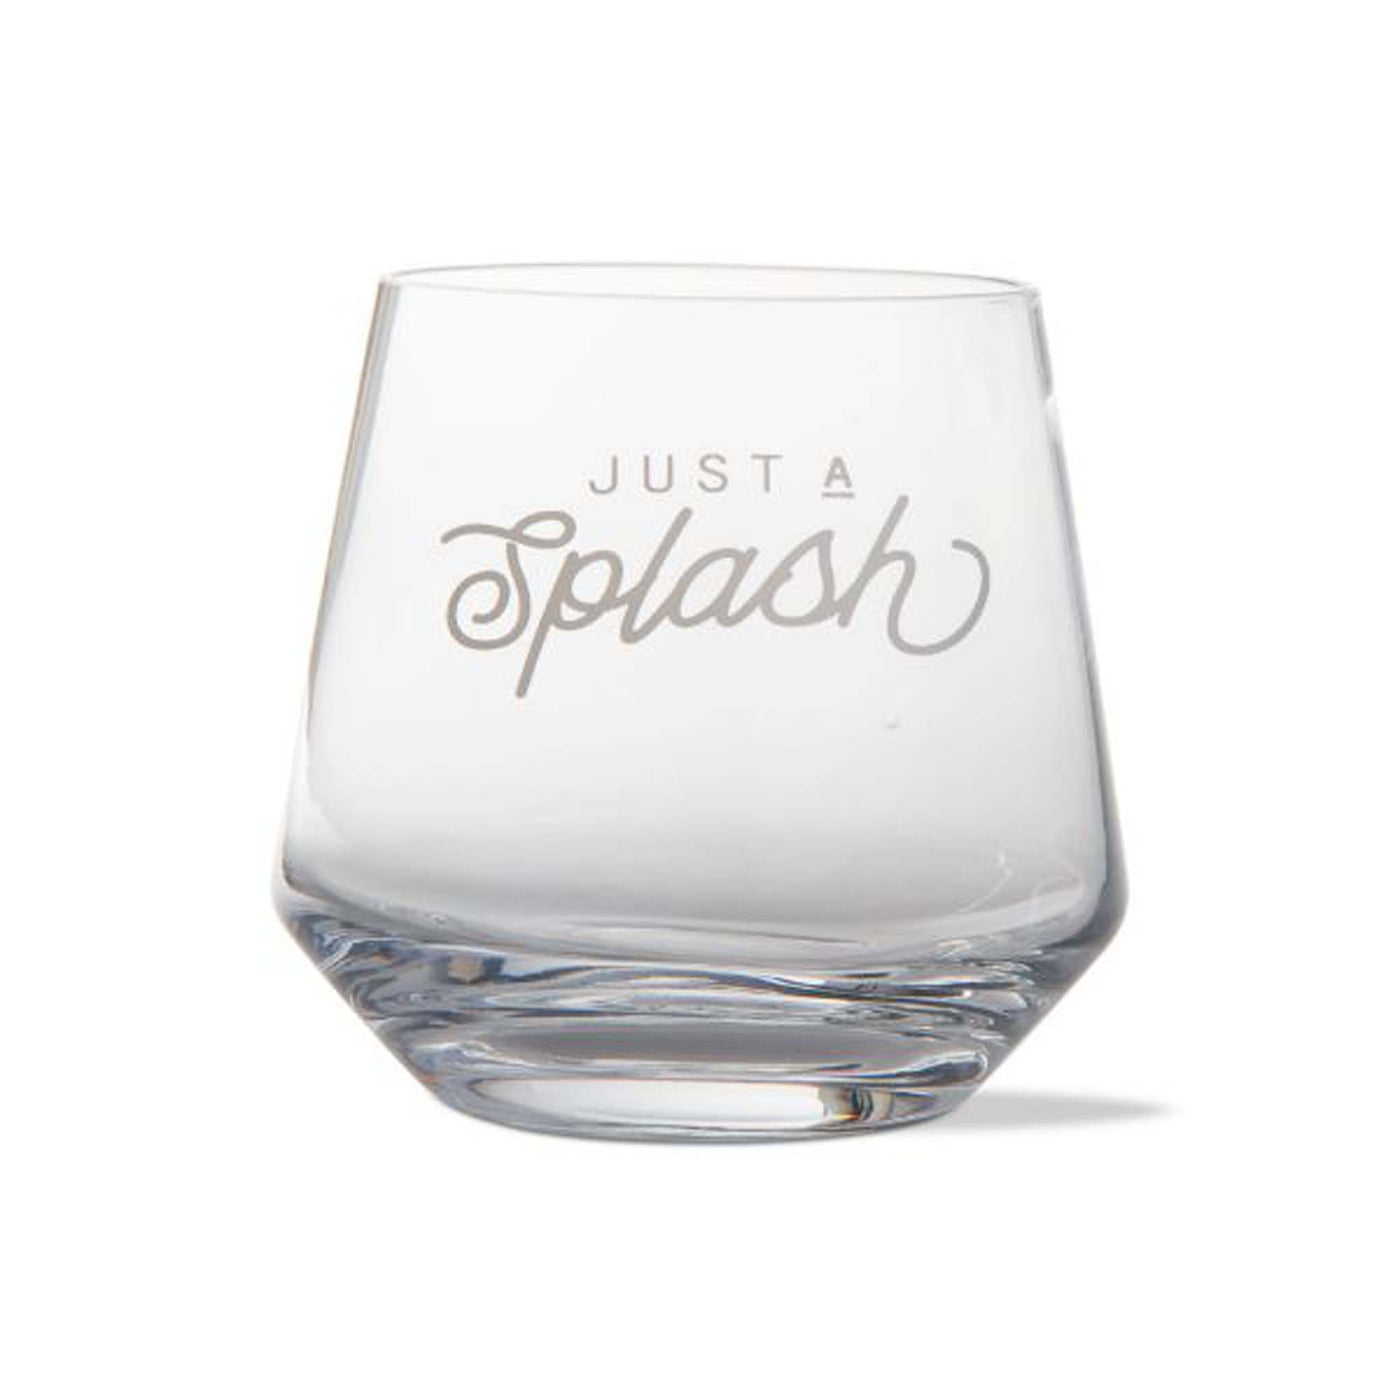 Just a Splash! Glass